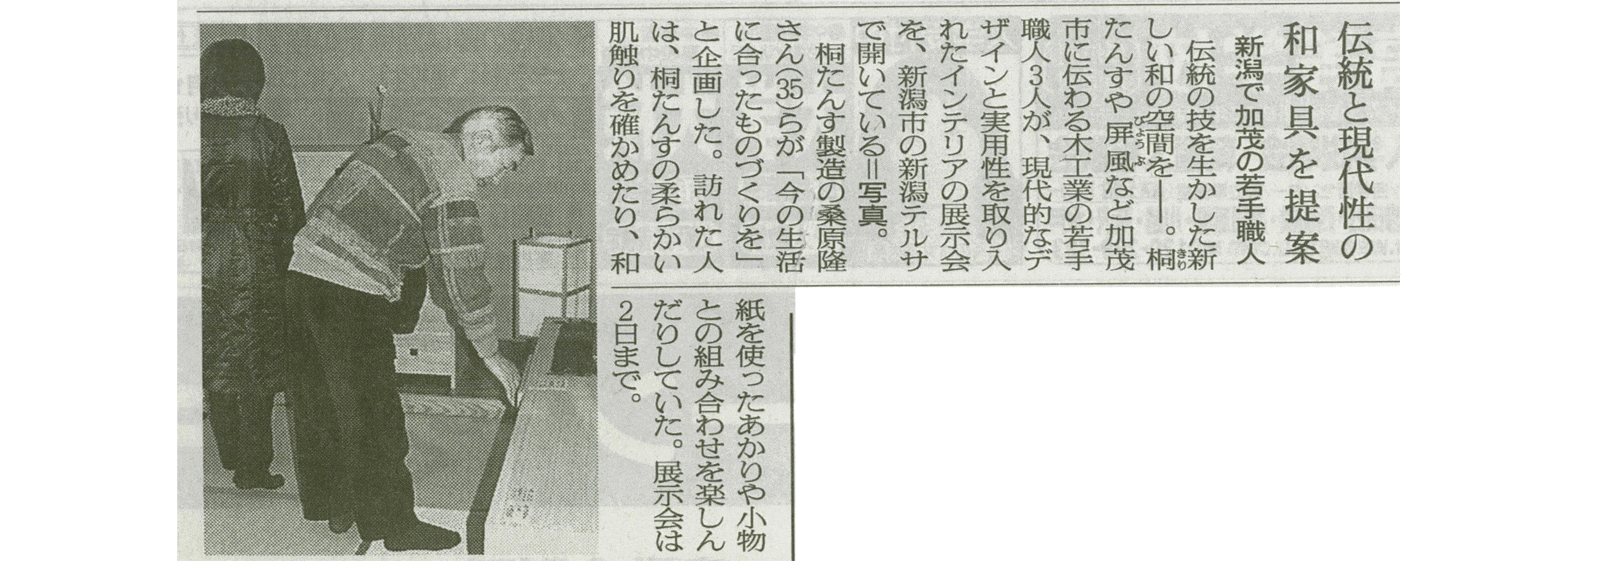 2003年2月2日 朝日新聞取材